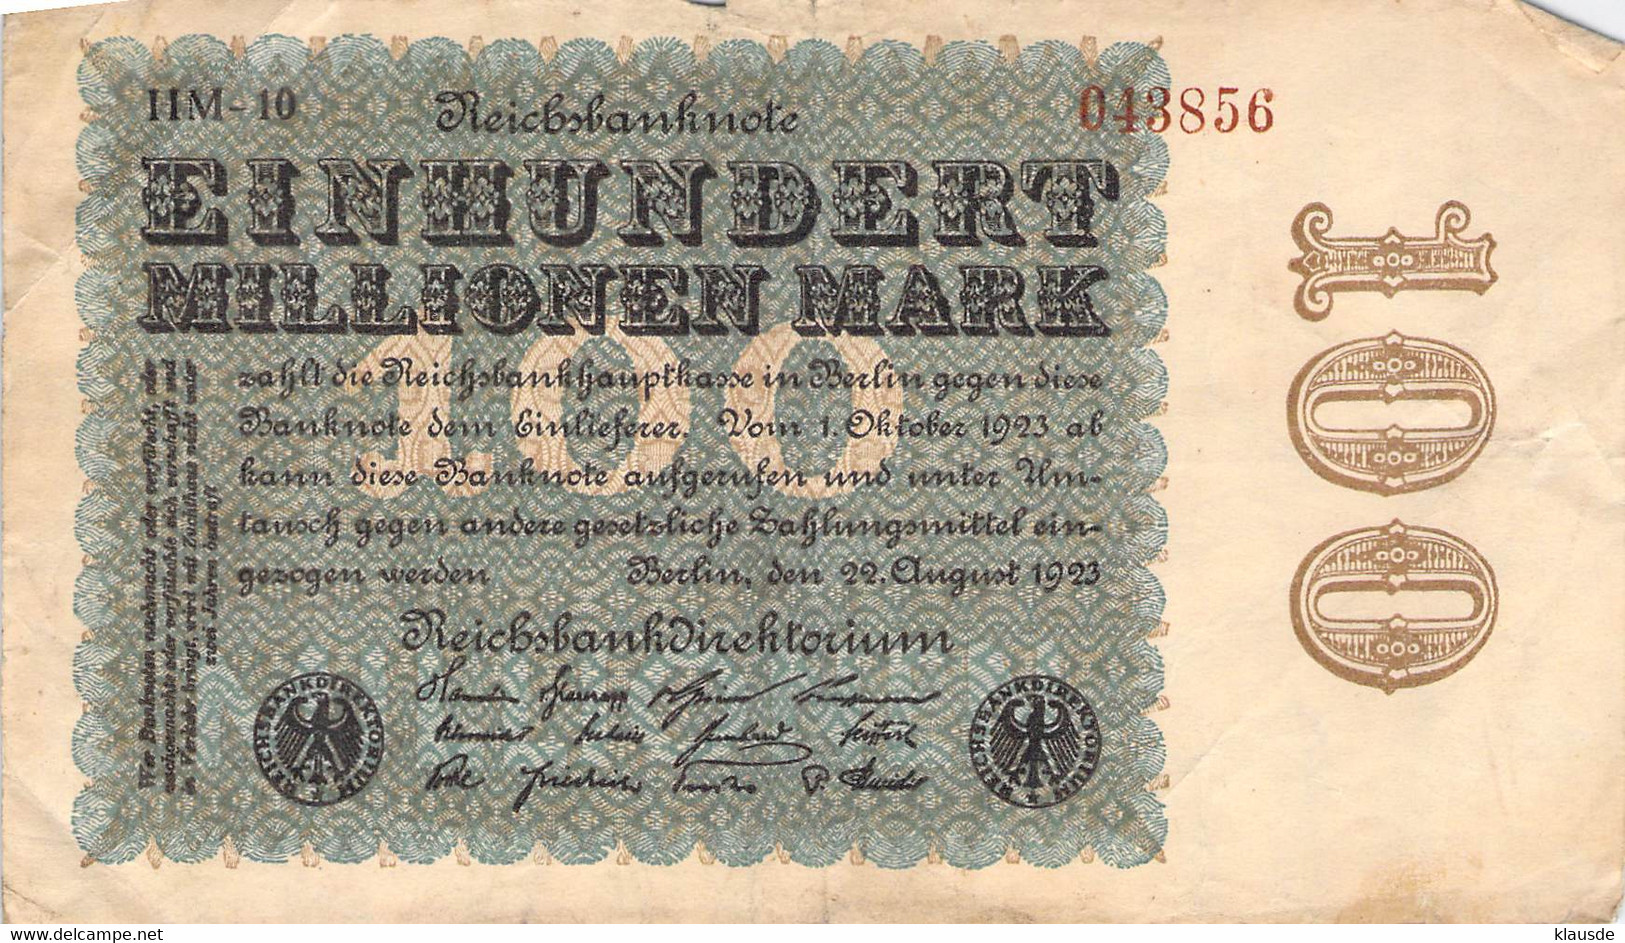 100 Mio Mark Reichsbanknote VF/F (III) - 100 Miljoen Mark